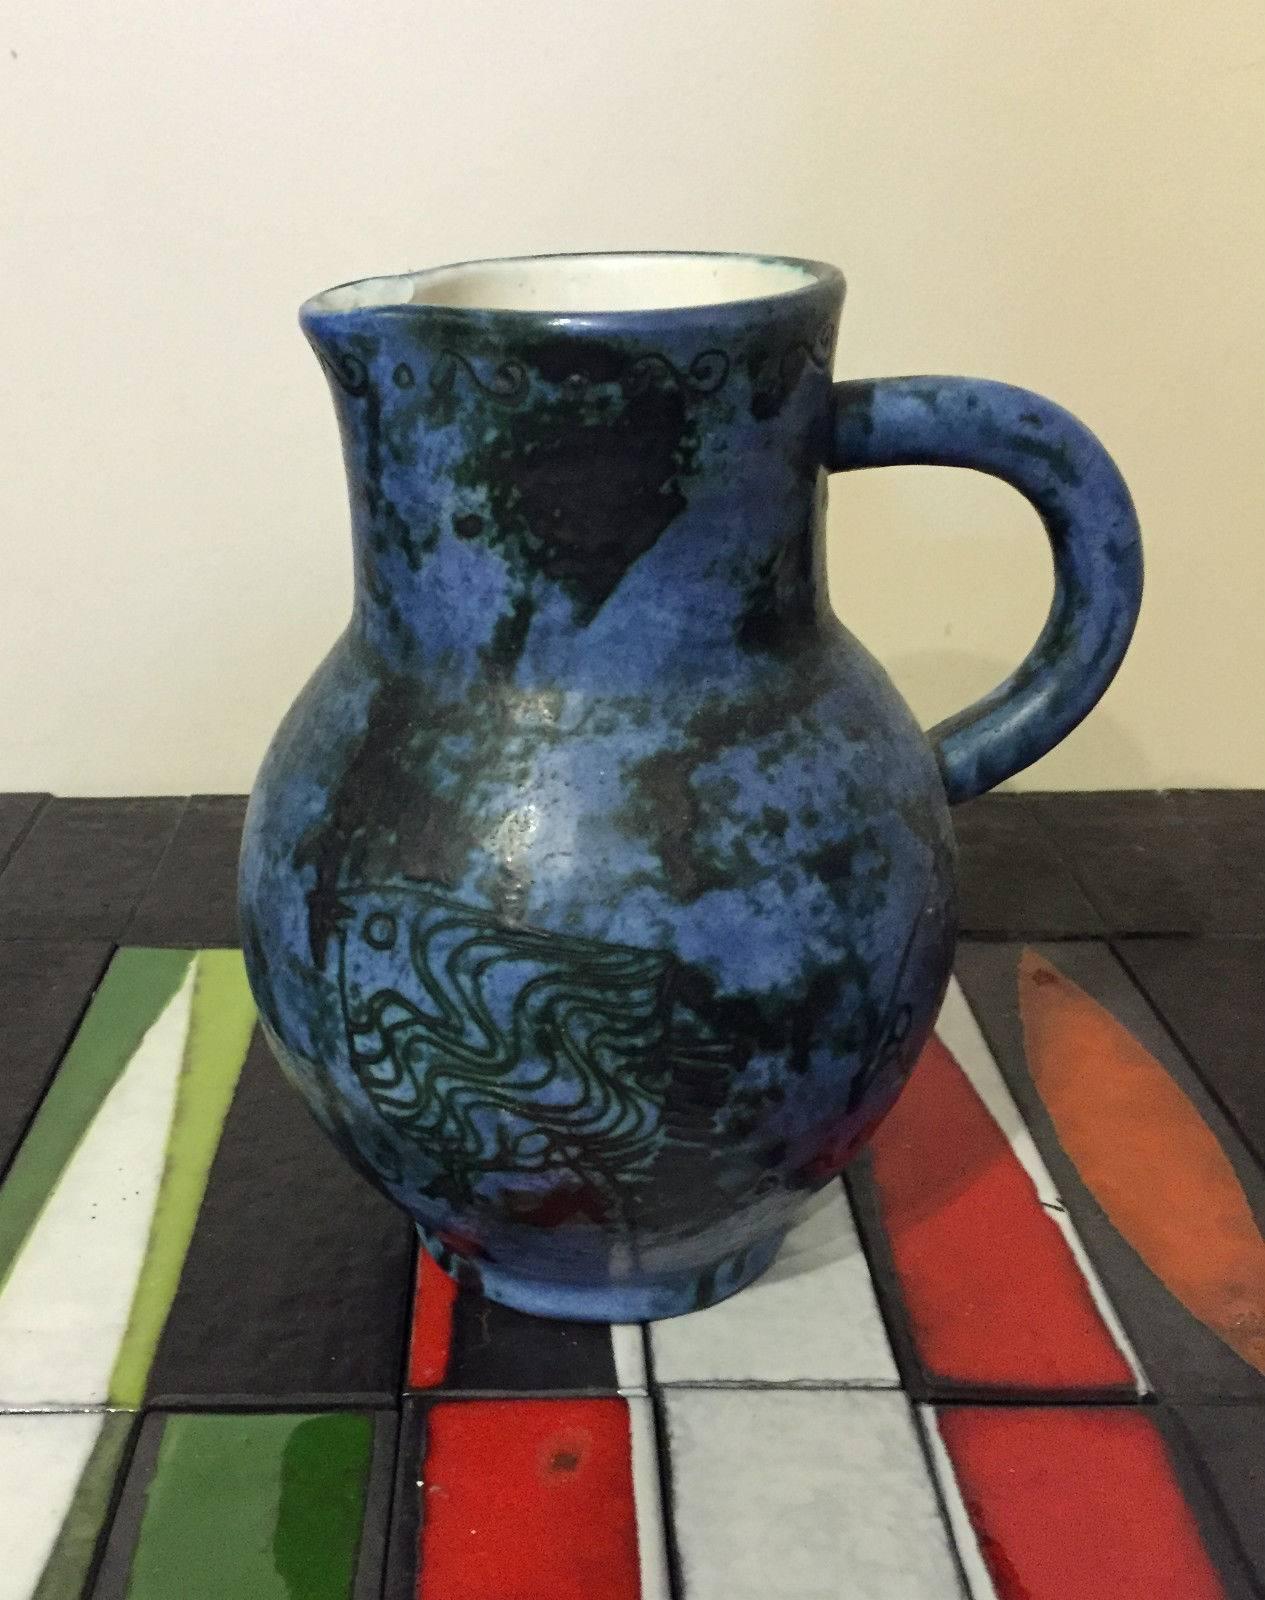 Gorgeous blue enamel ceramic pitcher and four glasses zoomorphic decor.
Mint conditions.

Pitcher dimension: 
Height: 20.5 cm.
Base: 8.5 cm.
Neck: 10 X 9 cm.

Glasses dimension:
Height:10.5 cm.
Base: 6 cm.
neck: 6.5 cm.

Free shipping.